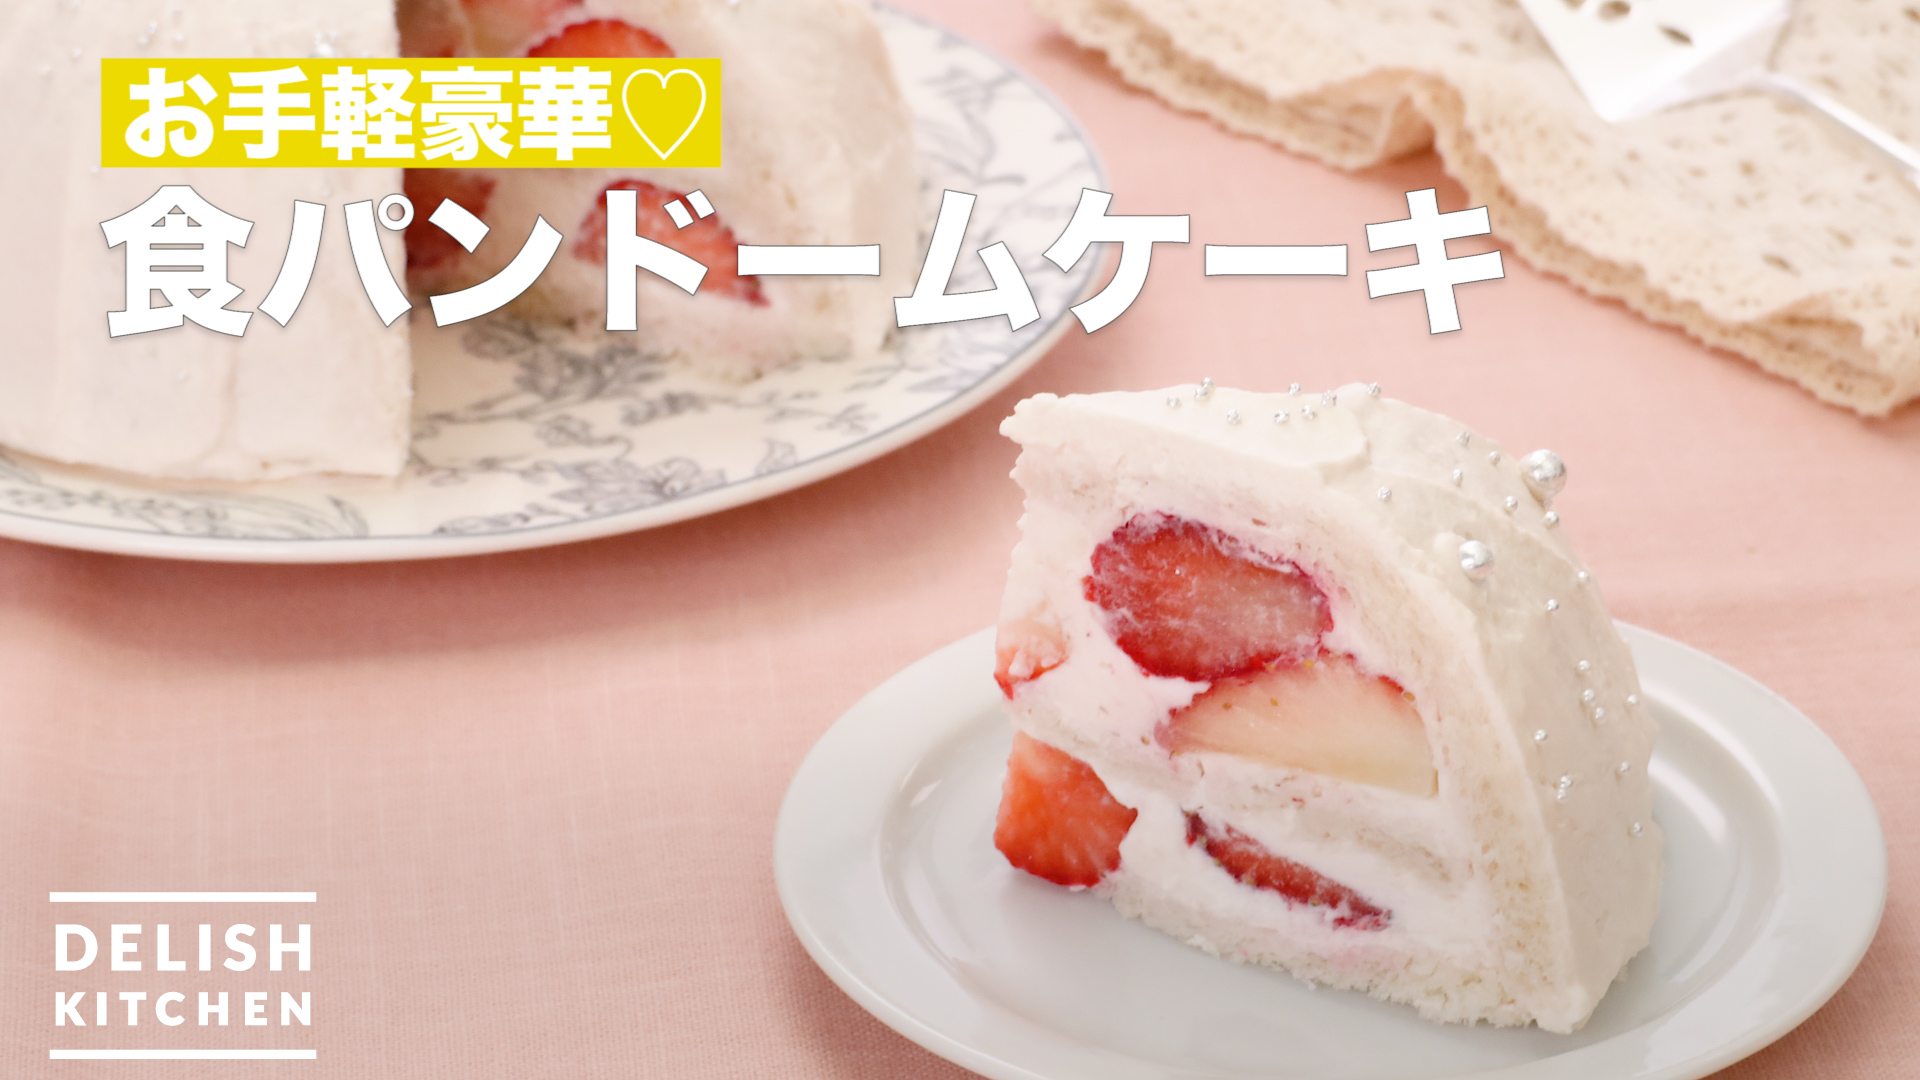 お手軽豪華 食パンドームケーキ How To Make Bread Dome Cake Delish Kitchen デリッシュキッチン Yahoo Japan